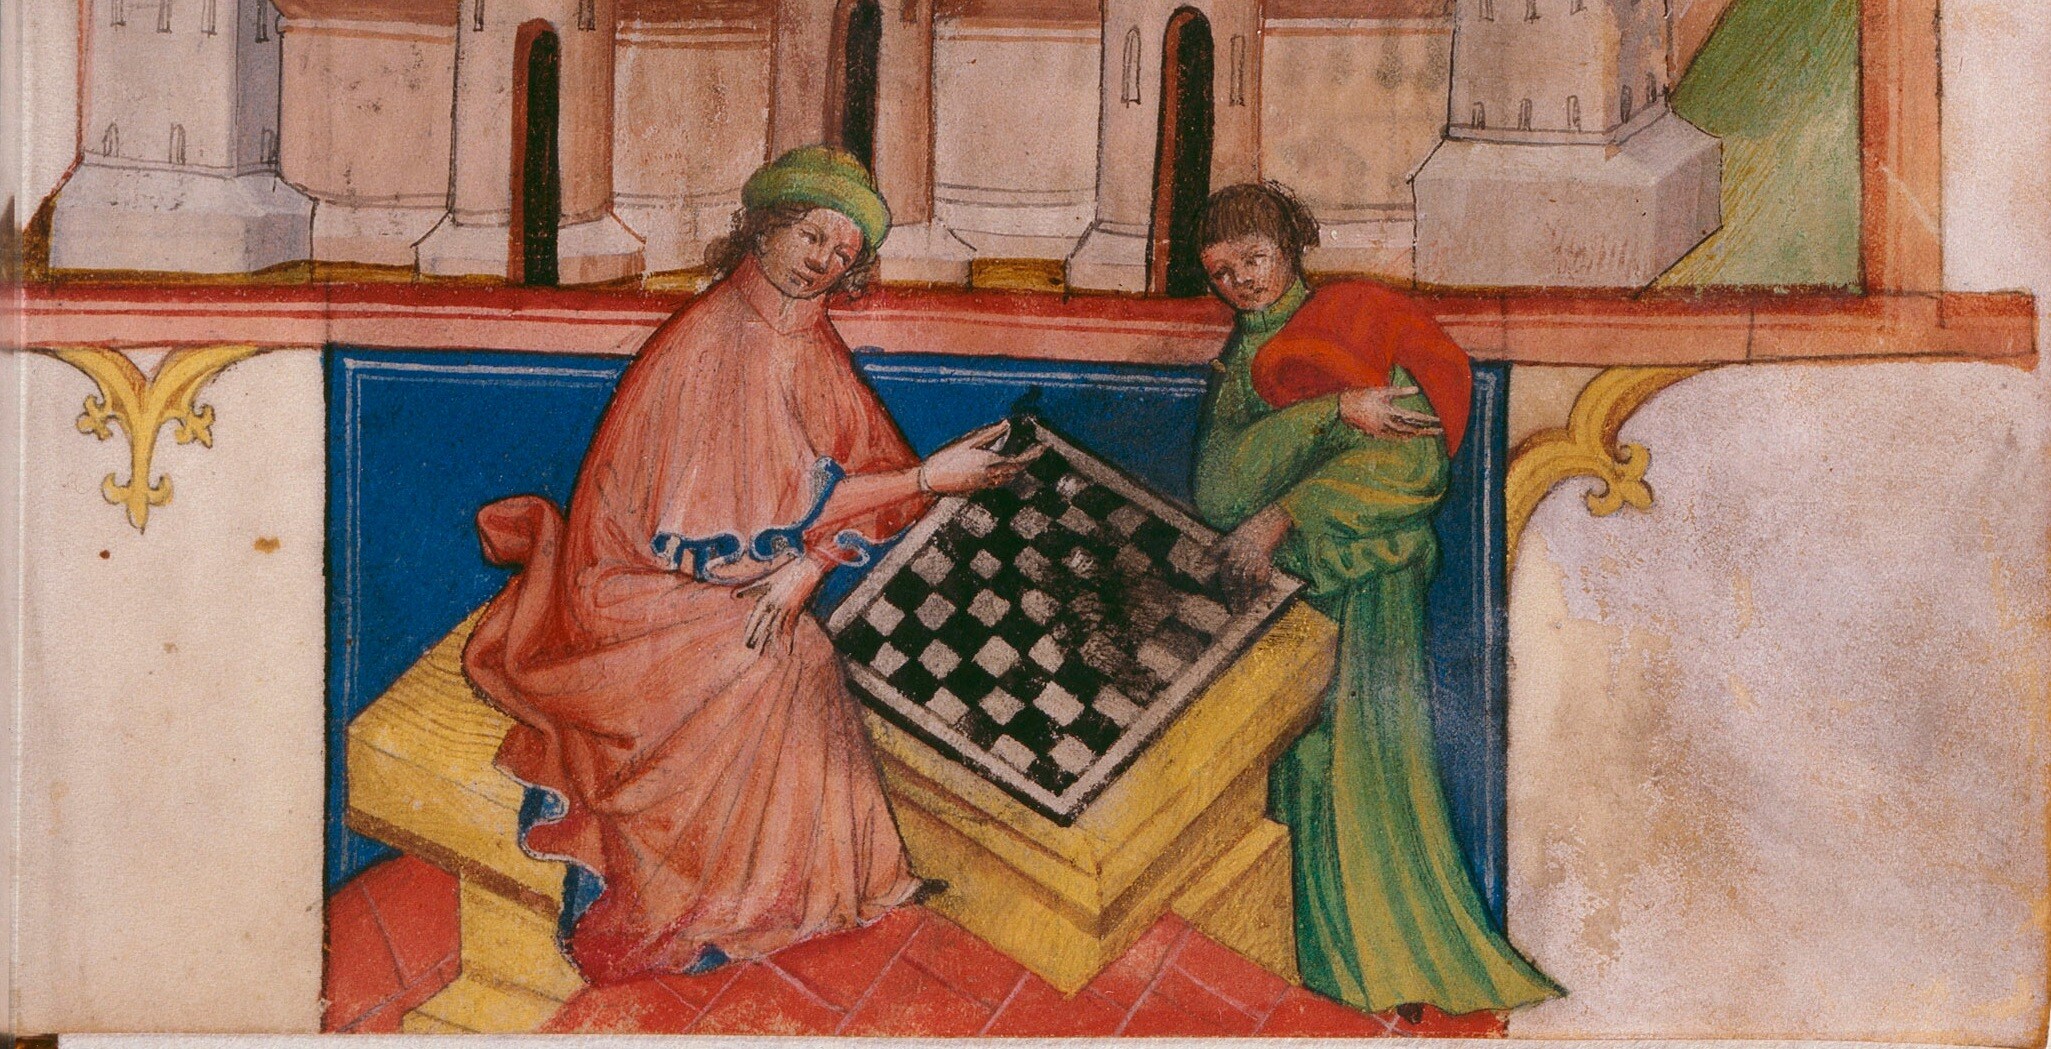 Ocho siglos de ajedrez, en la Biblioteca Nacional